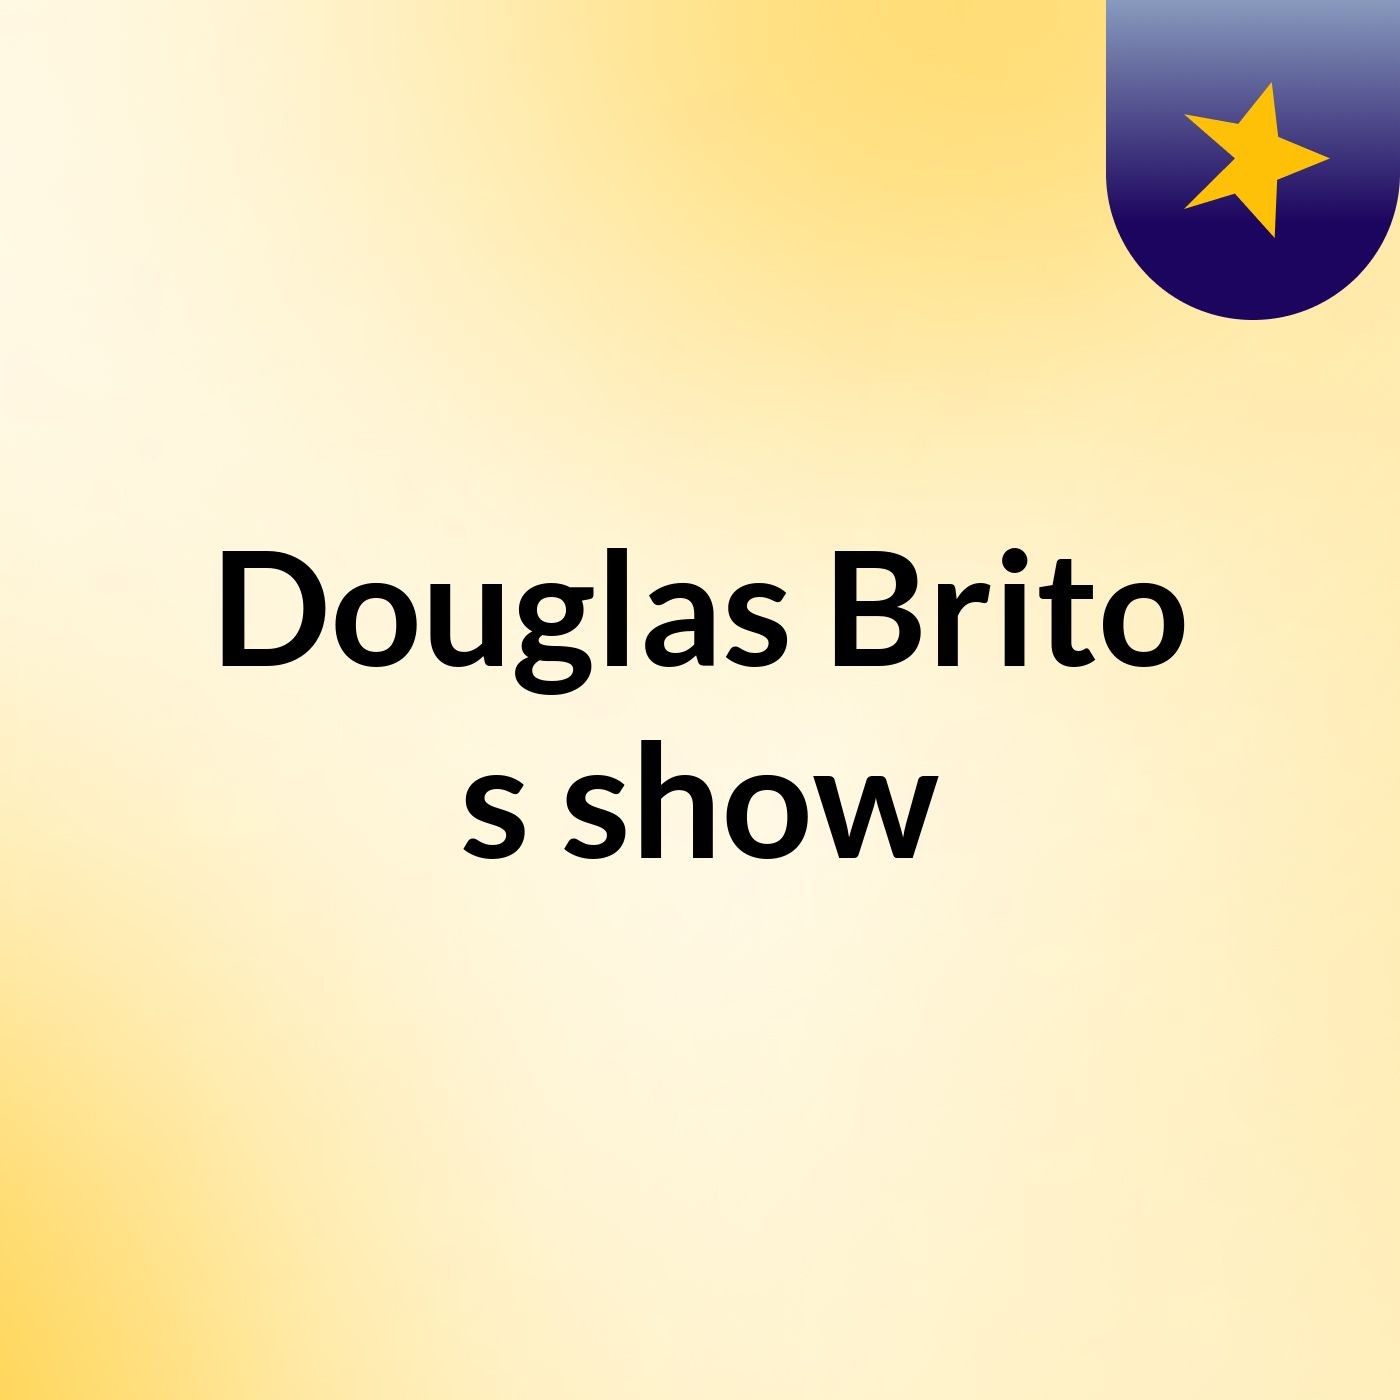 Douglas Brito's show